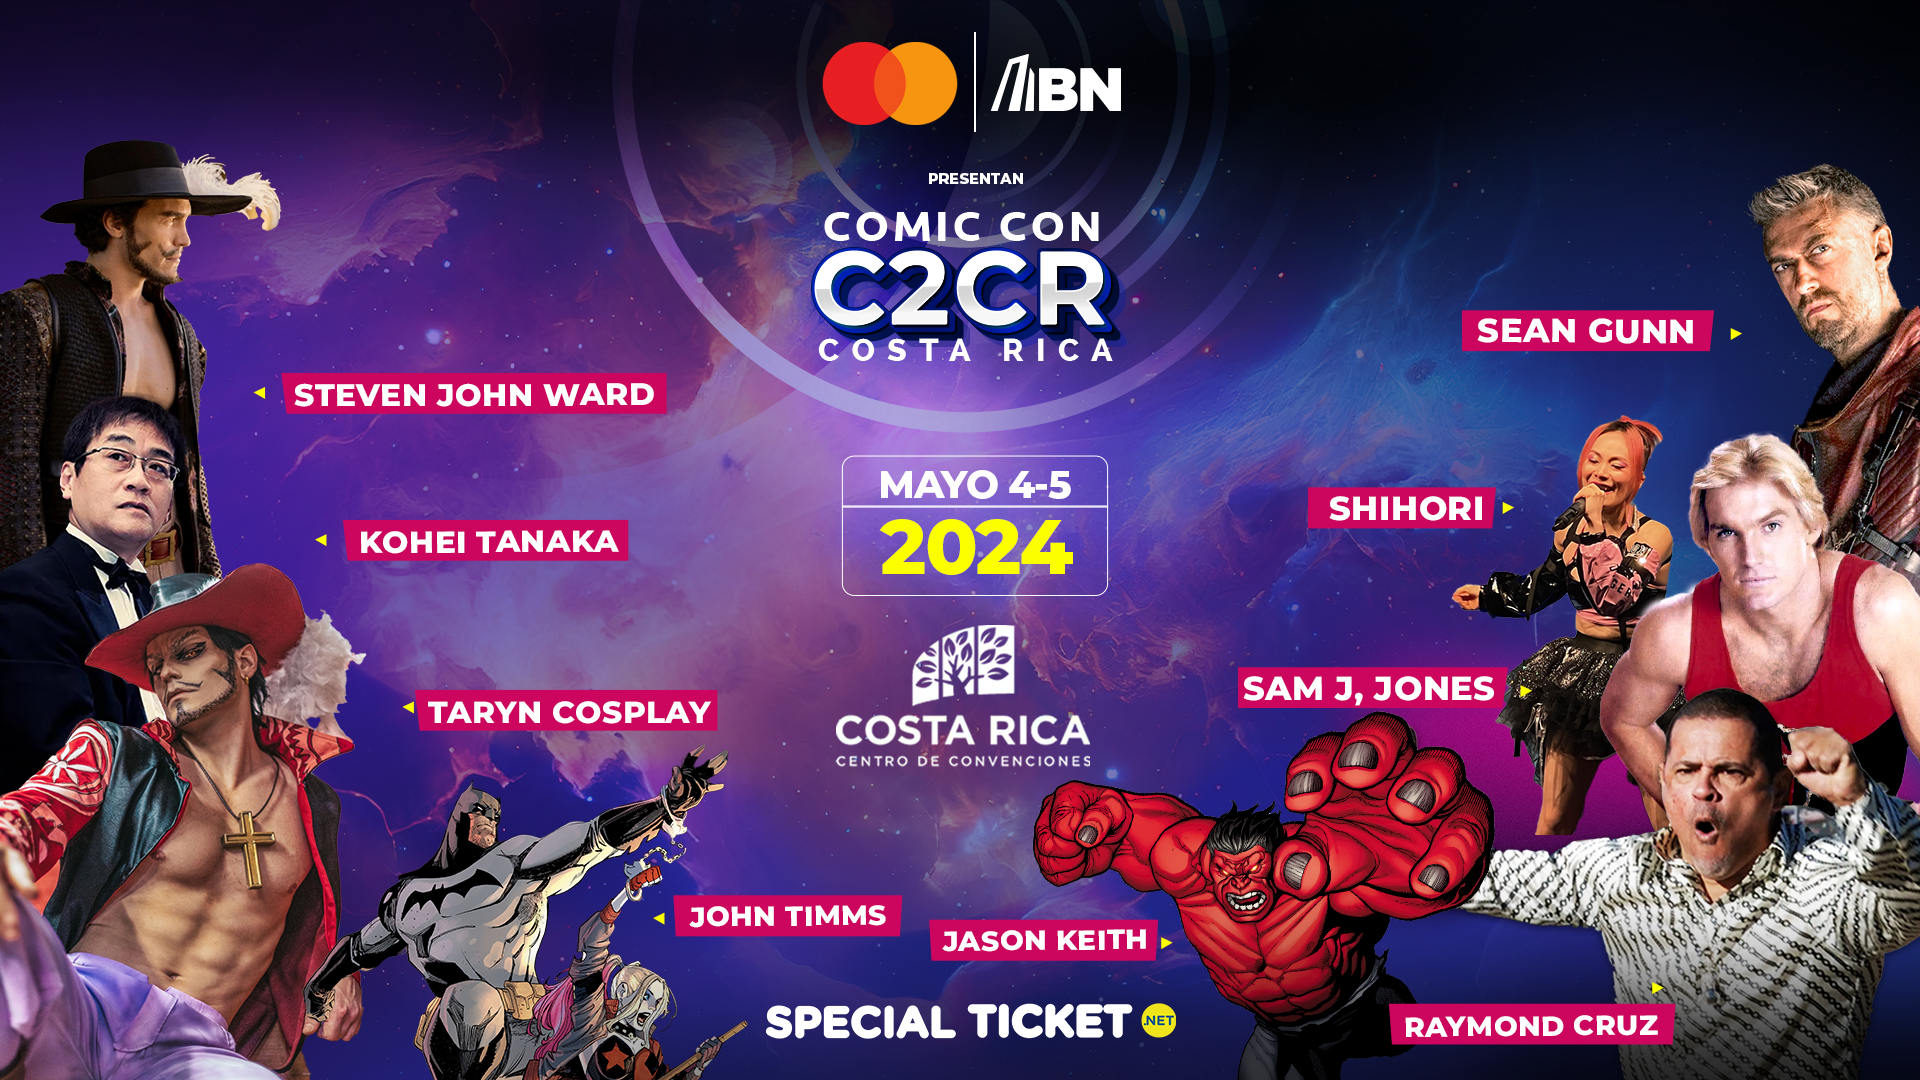 Una X-Men y un wookie vendrán a Comic Con Costa Rica | The Hype Geek